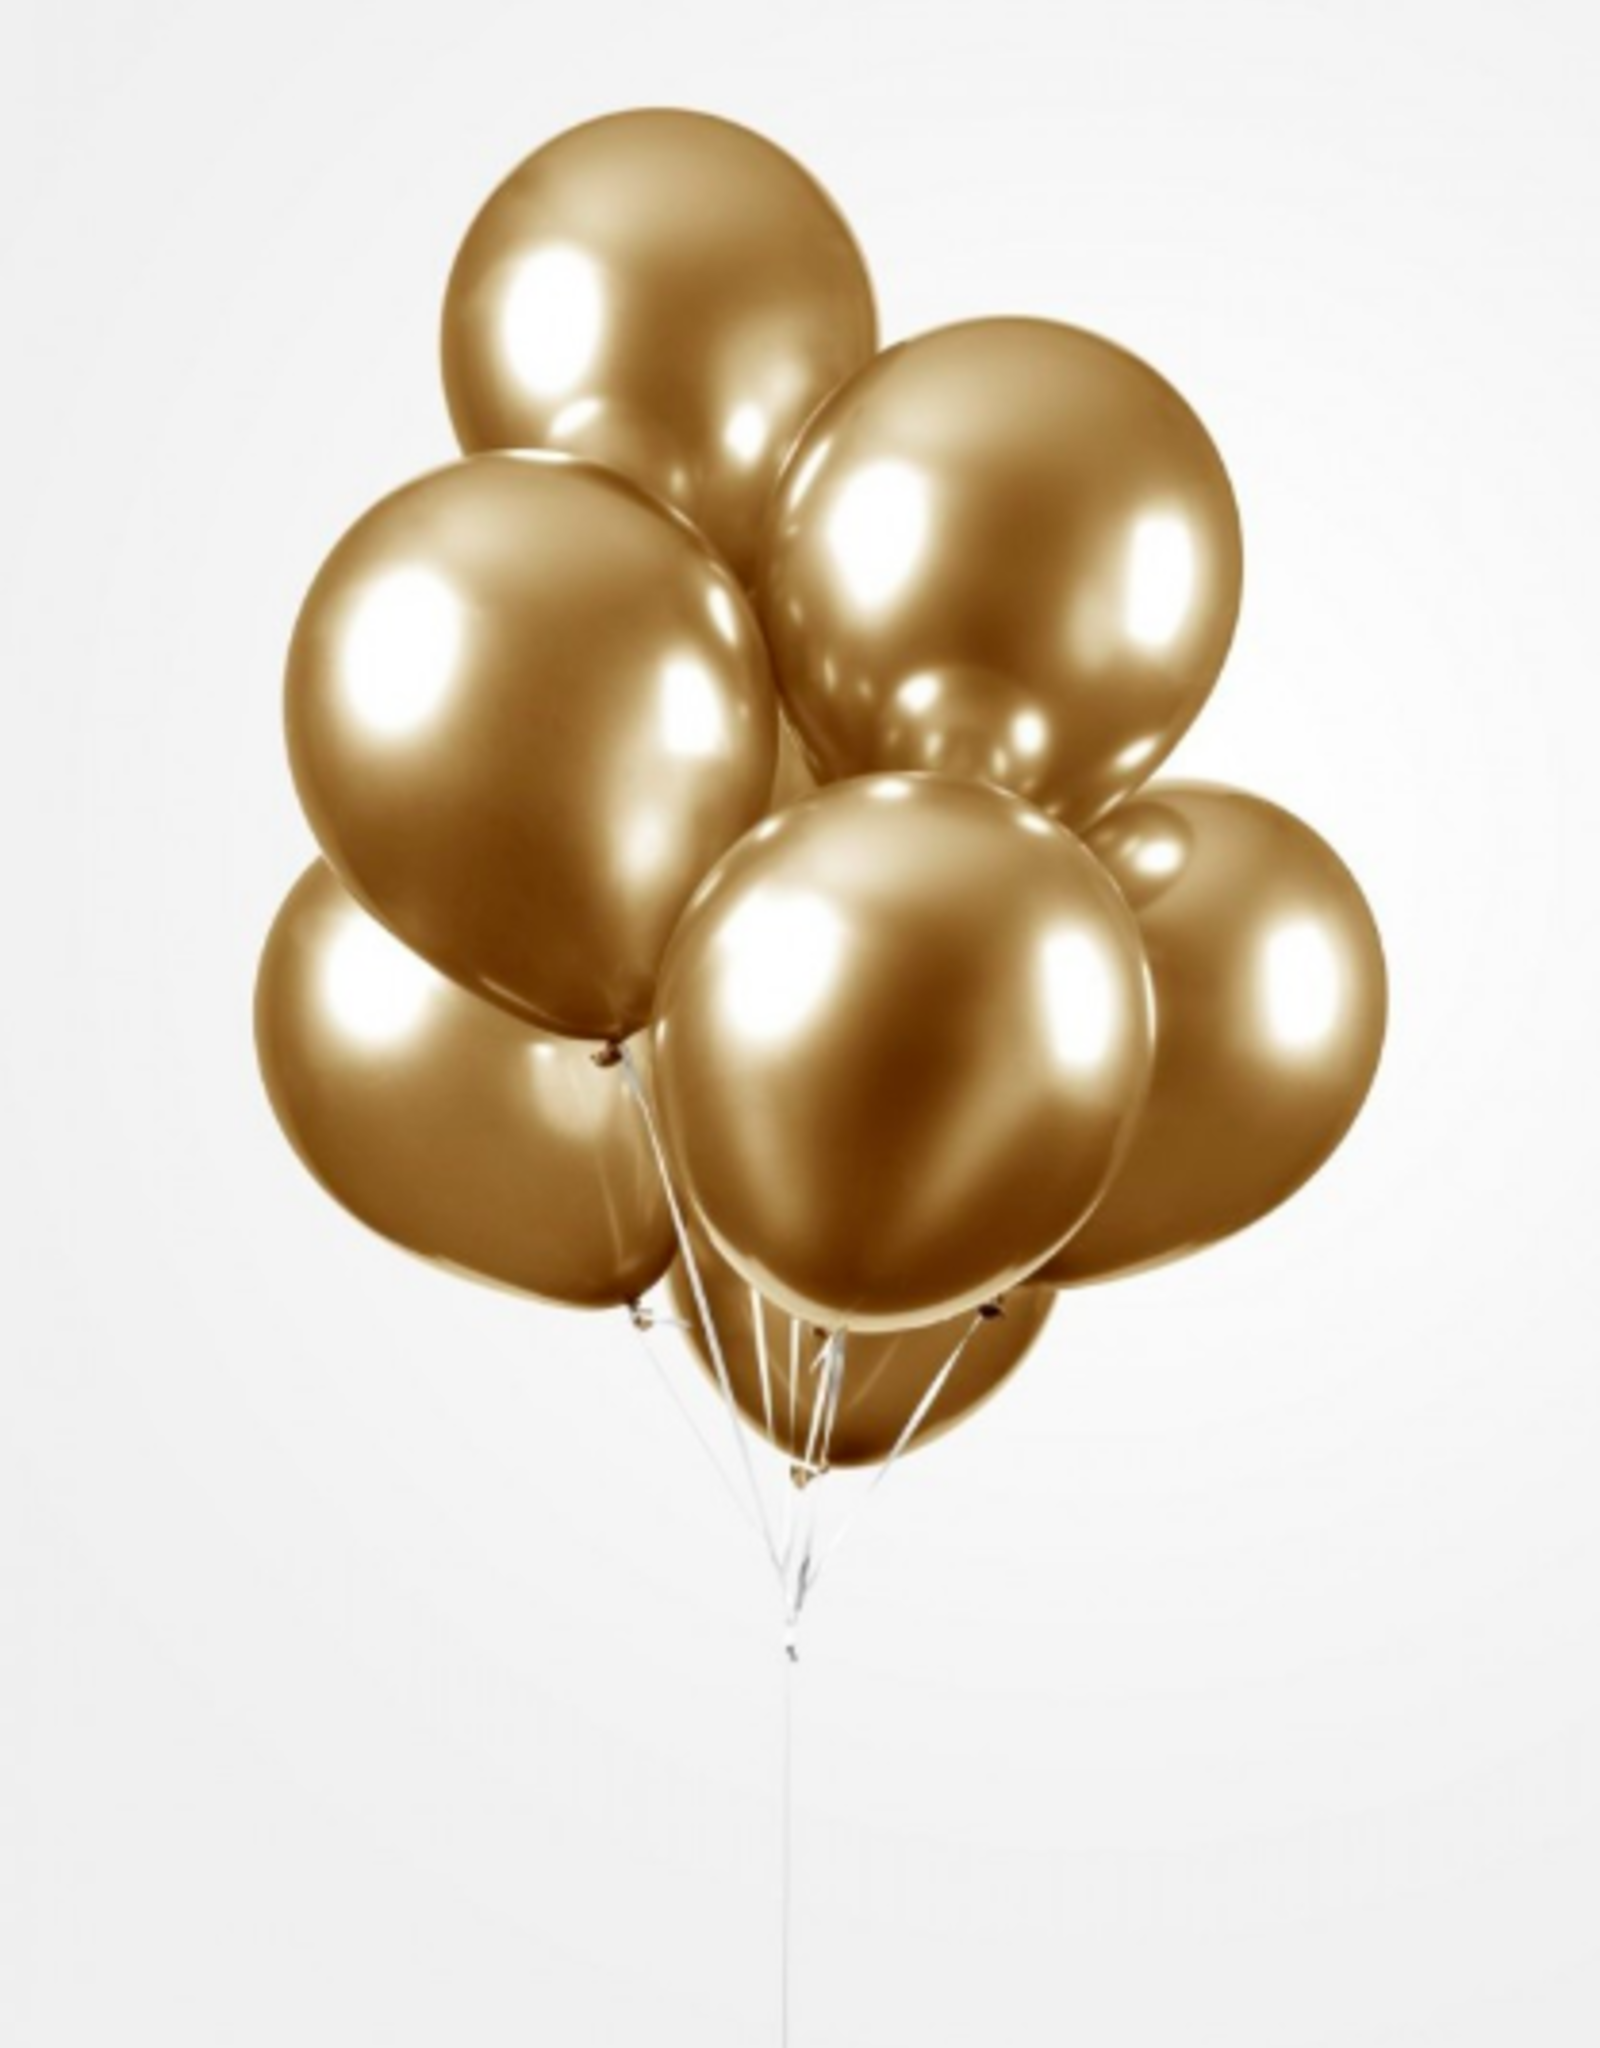 Chrome ballonnen goud (30 cm) | 10st